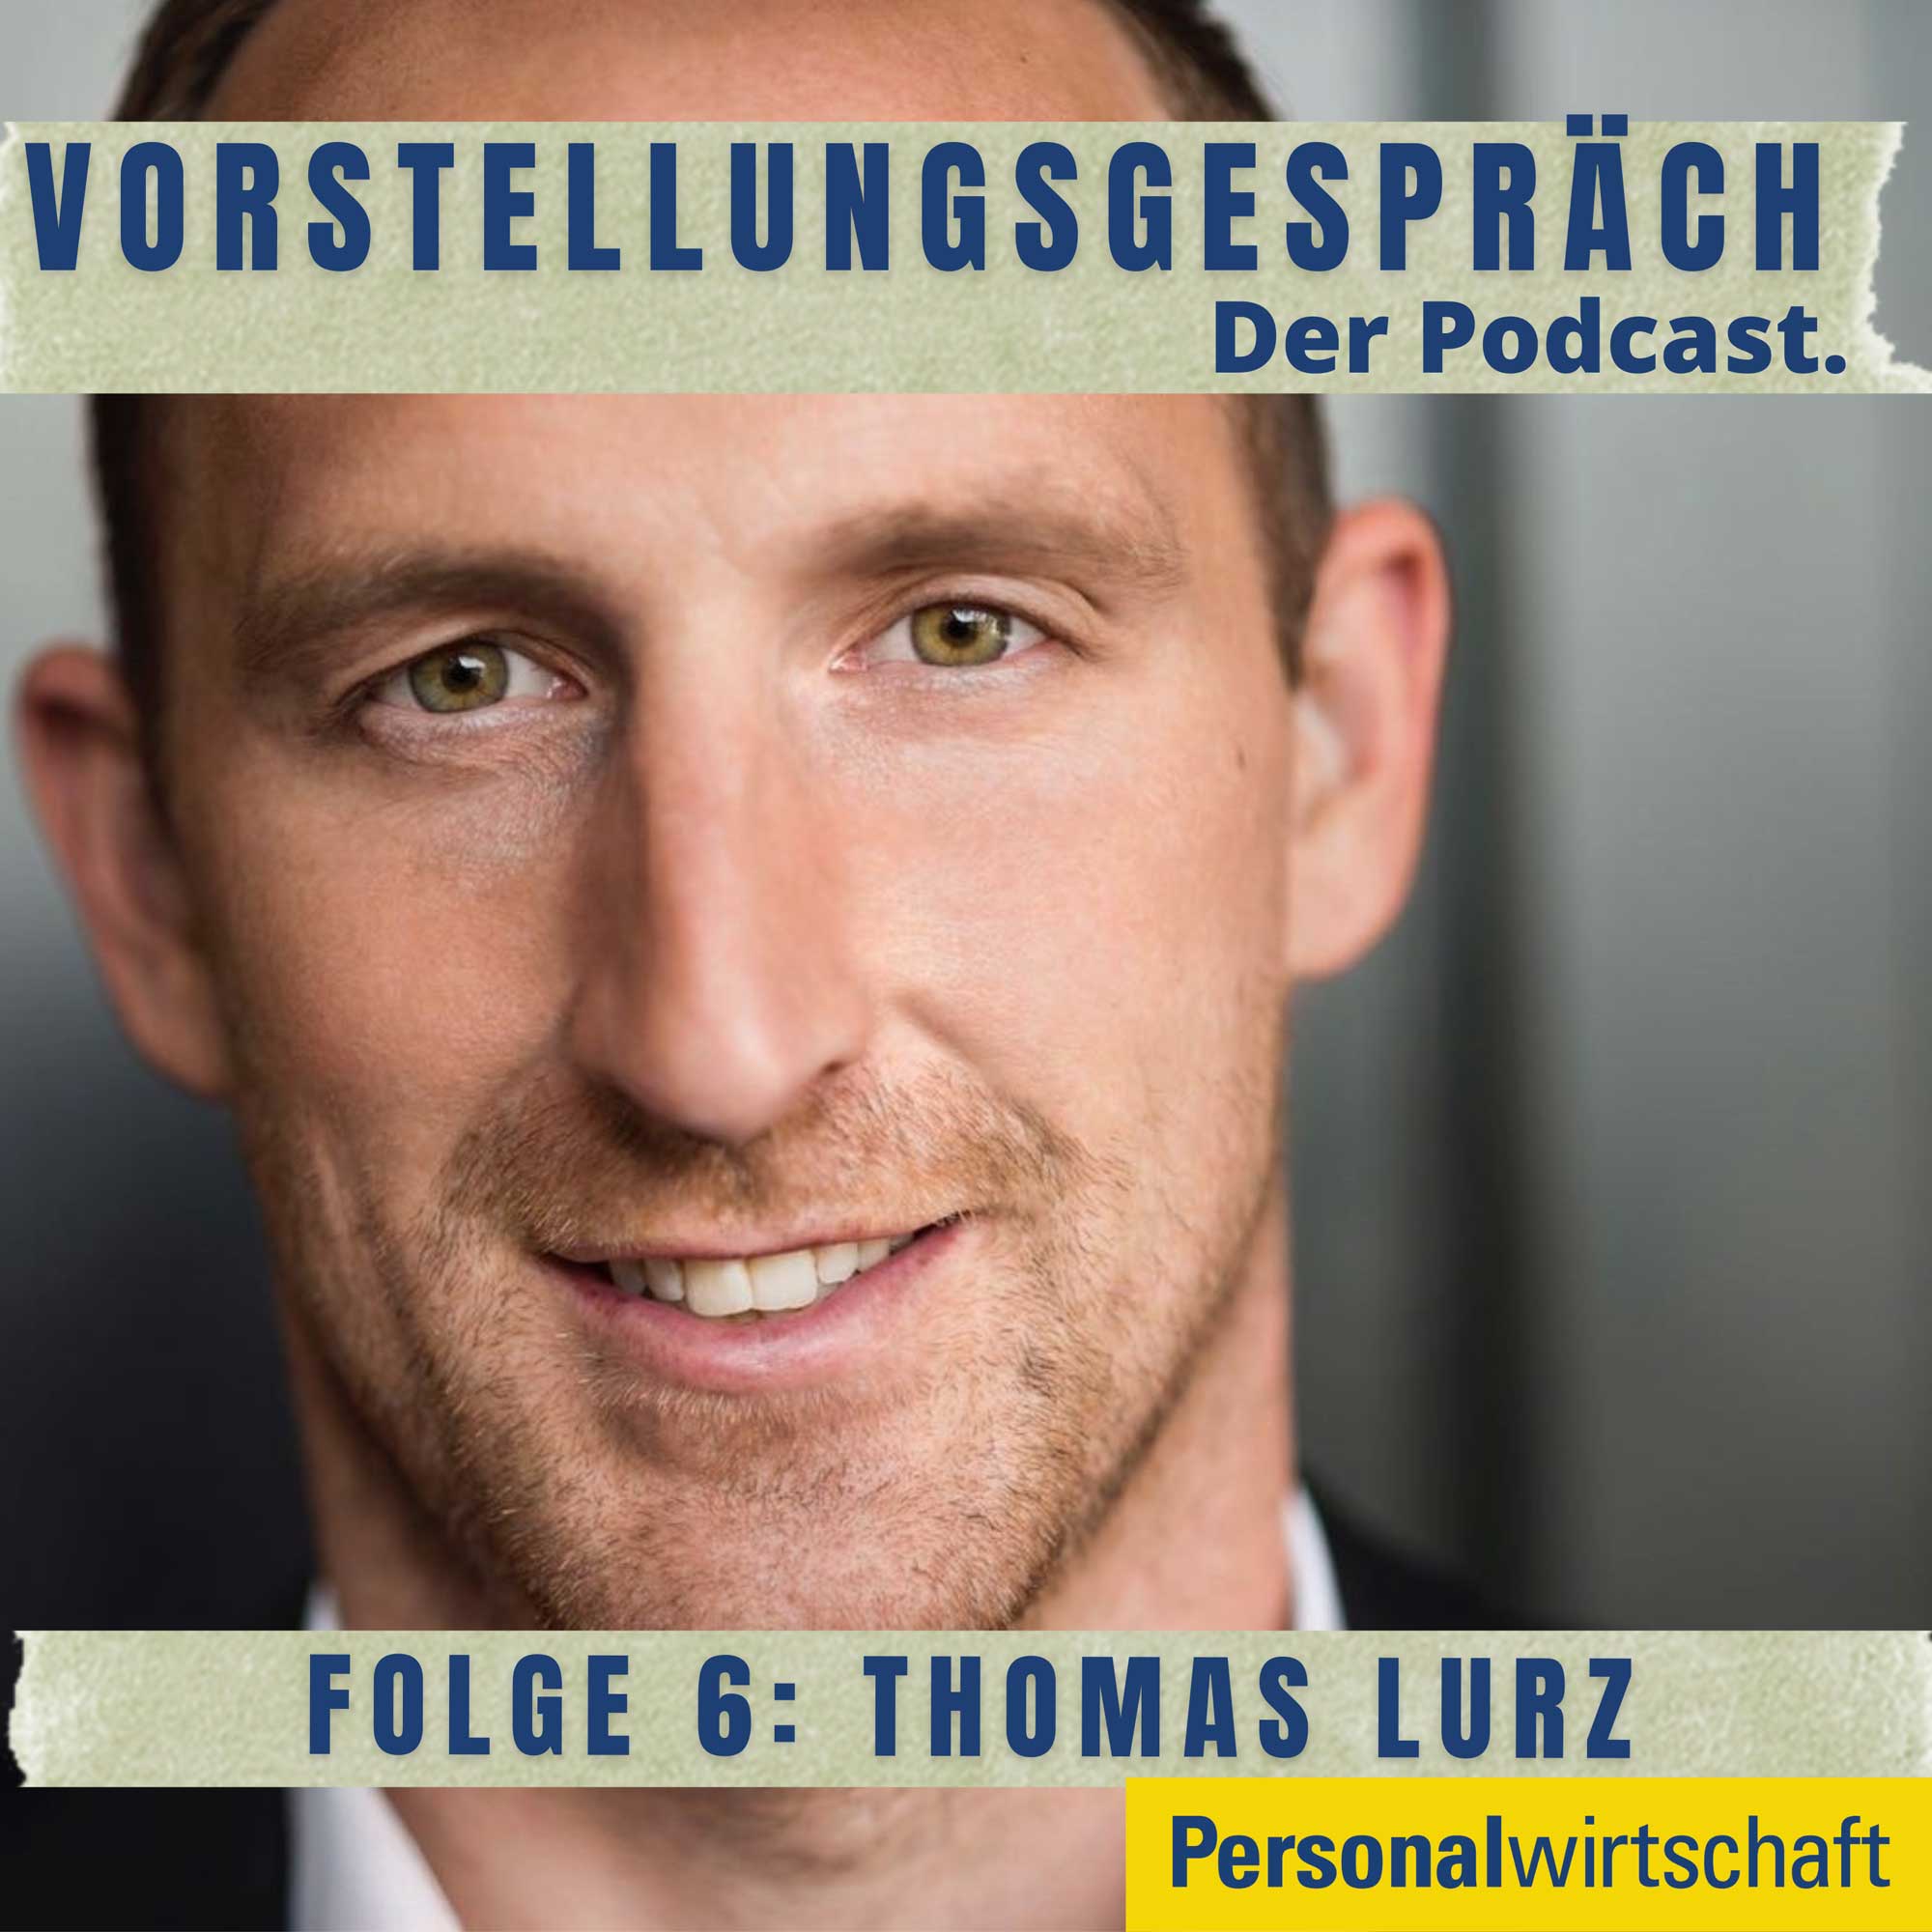 Folge 6: Thomas Lurz – Der Motivator mit zwei Karrieren